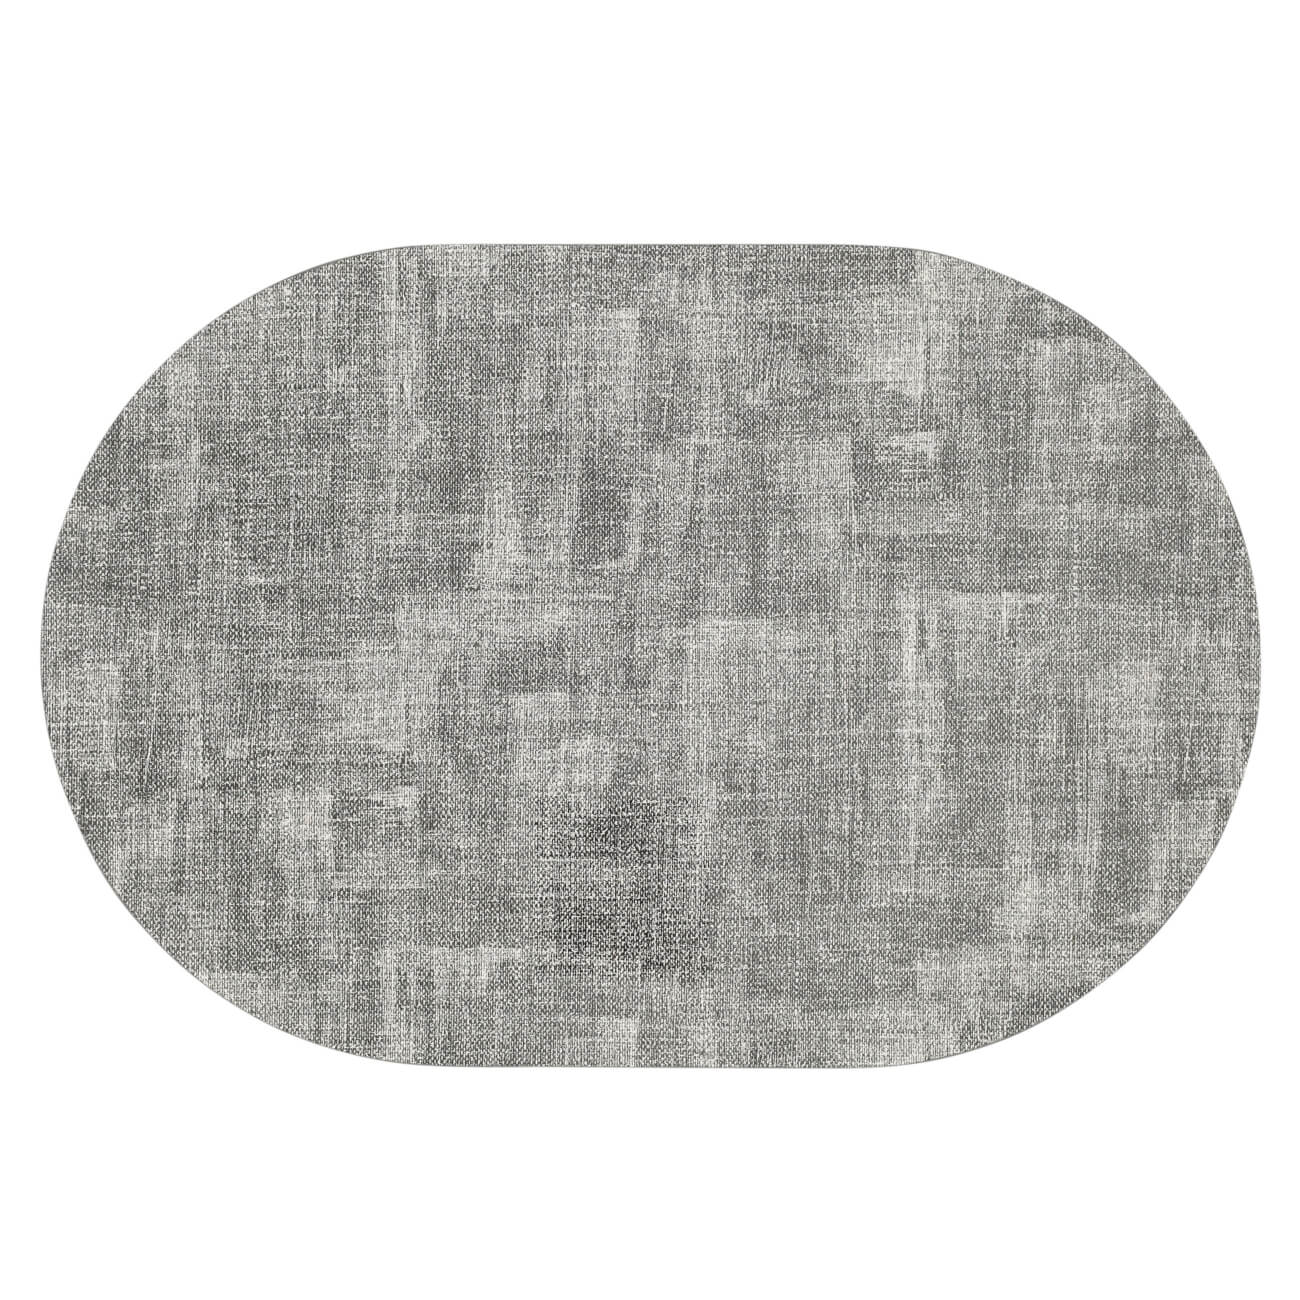 Салфетка под приборы, 30х45 см, ПВХ, овальная, серо-белая, Rock изображение № 1